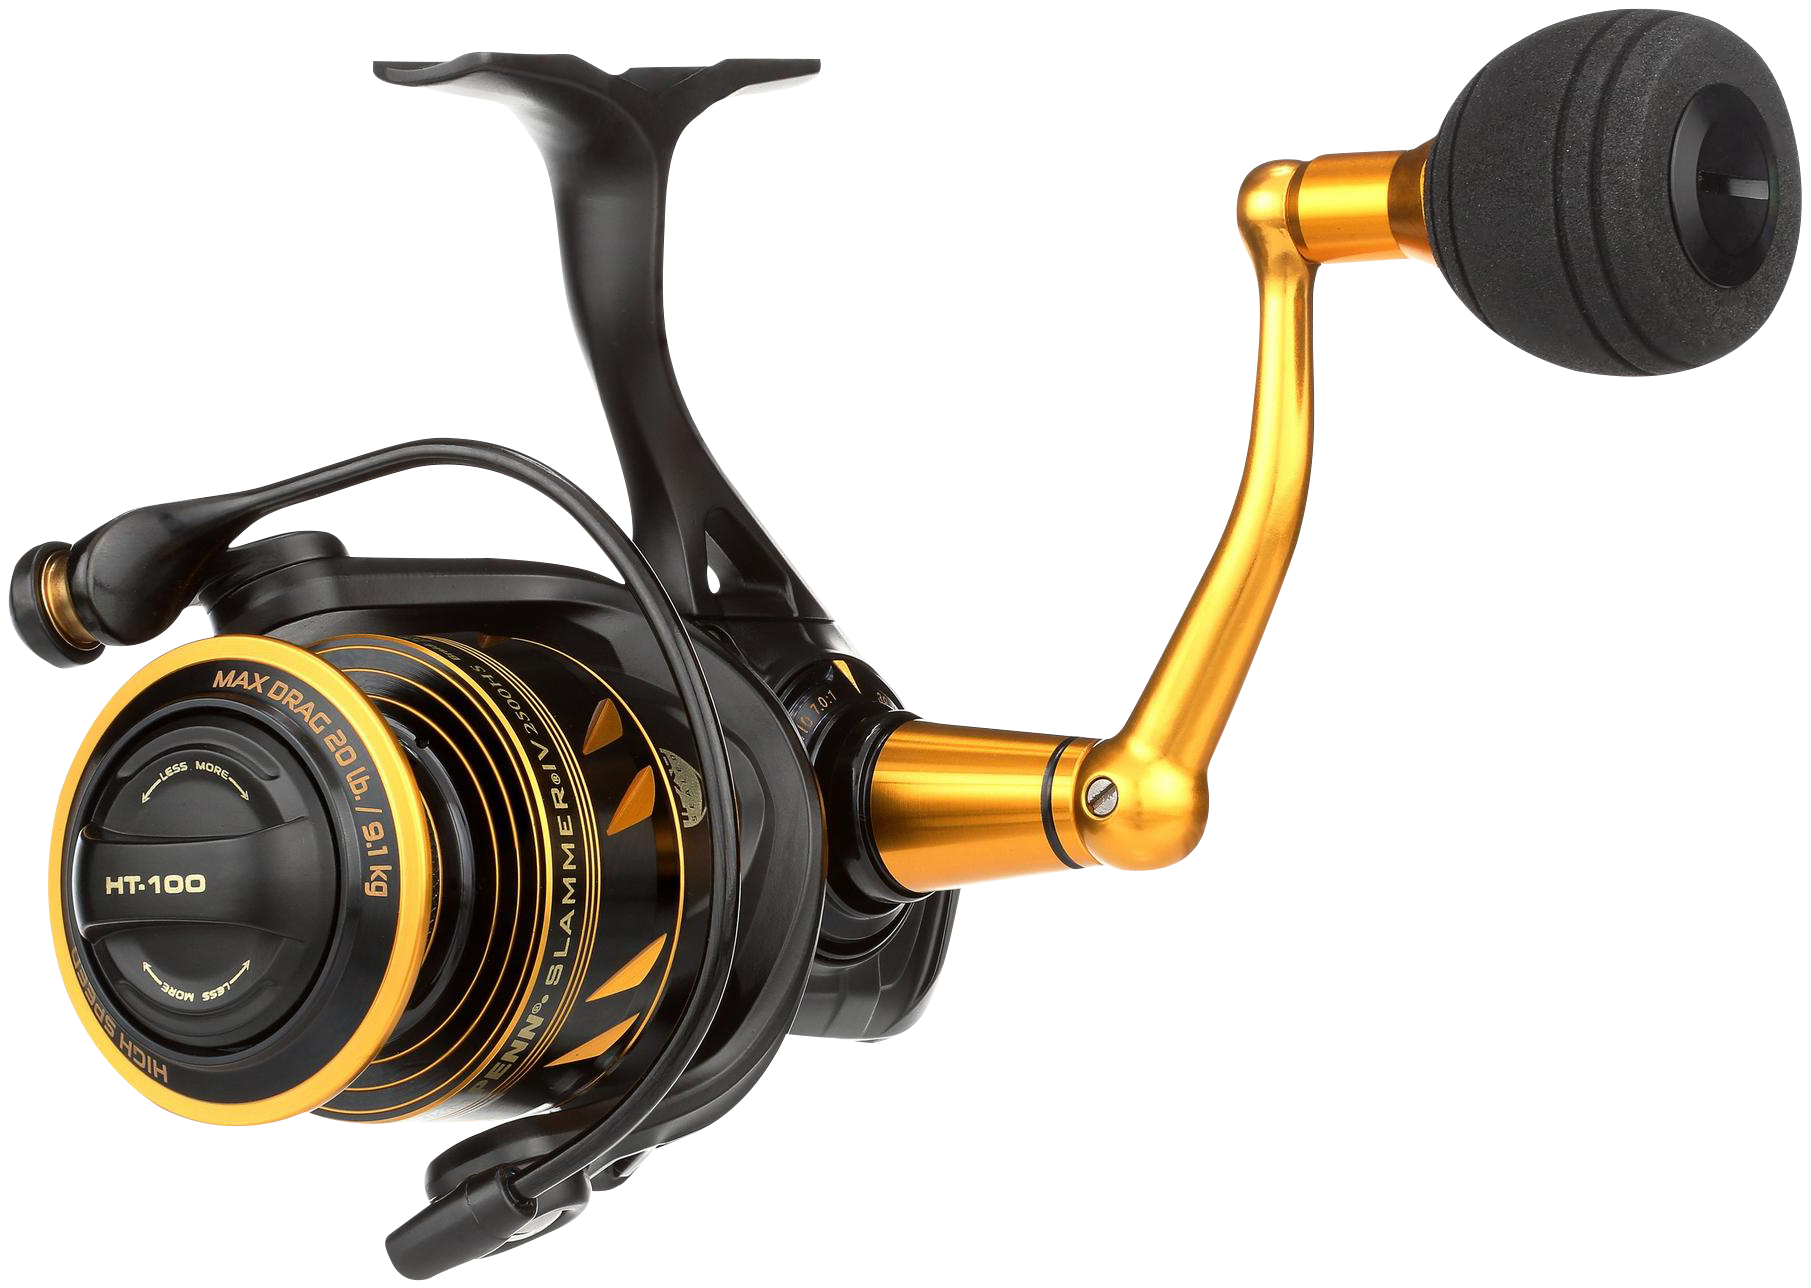 Penn NEW Slammer IV / MK4 Spinning Fishing Reel - Full Metal Body